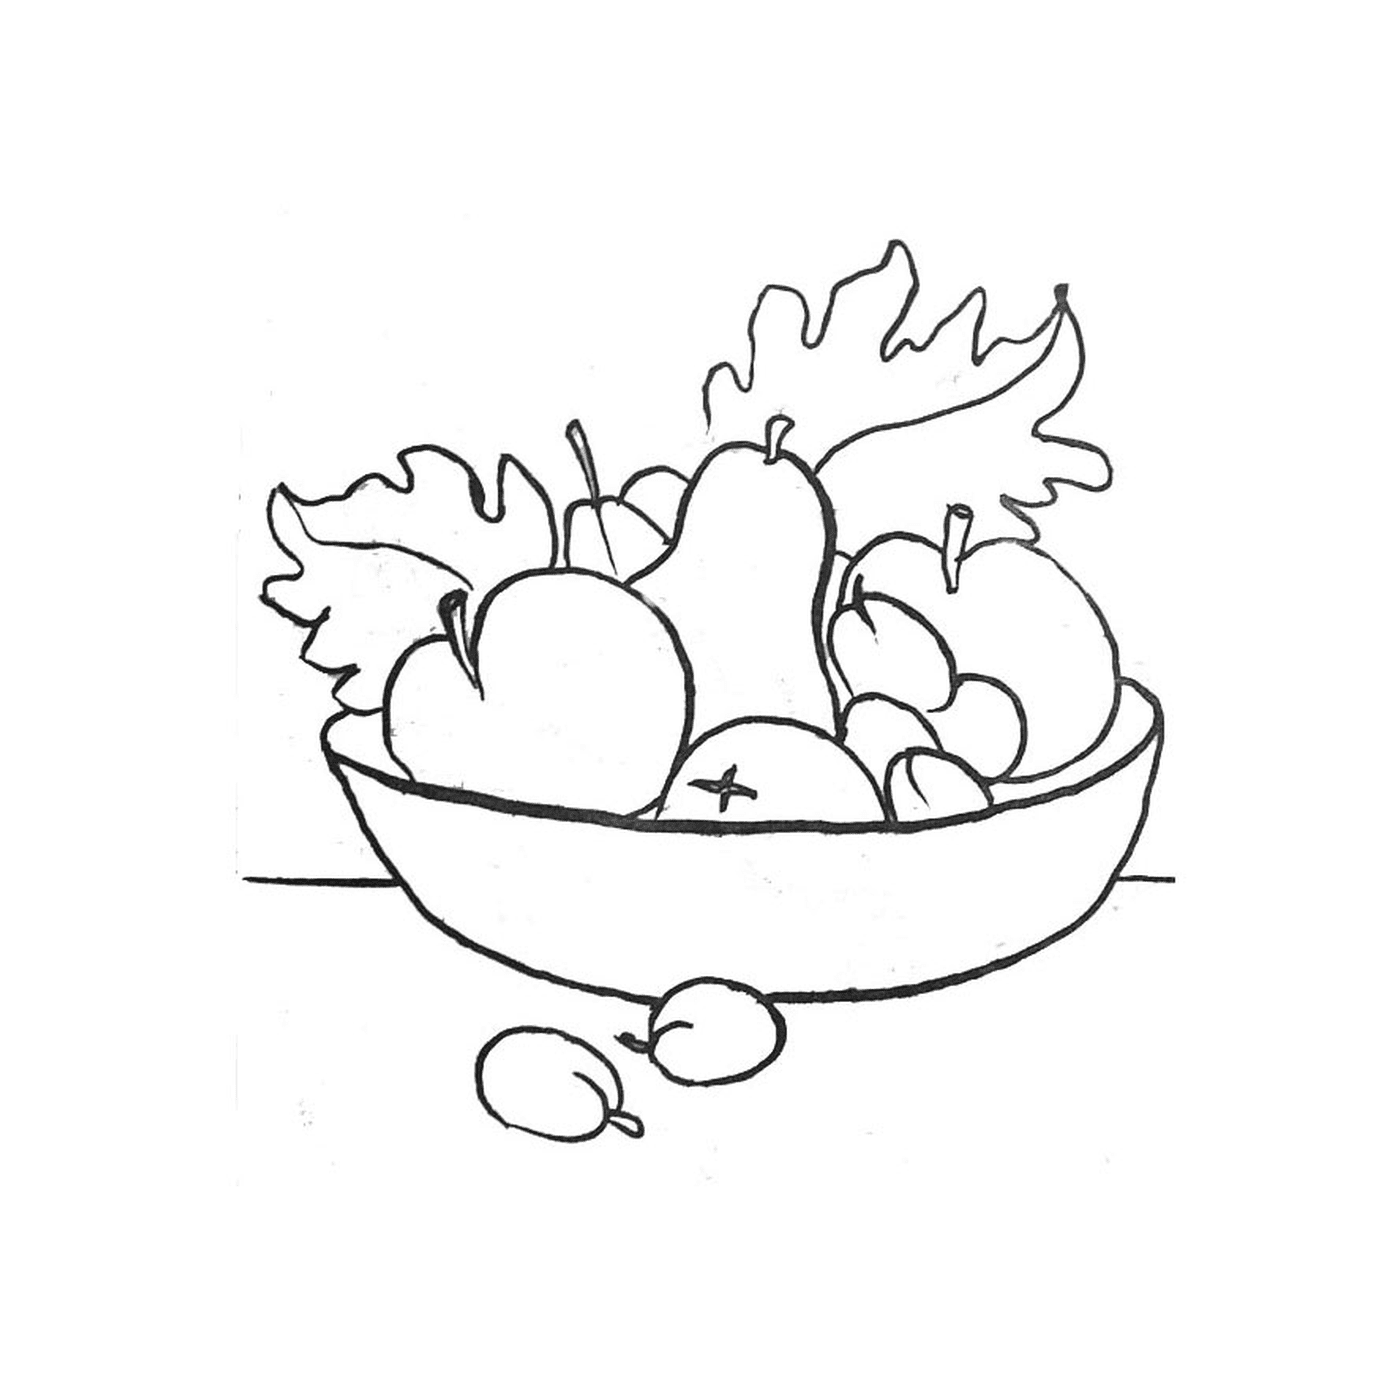  碗里装满新鲜水果, 